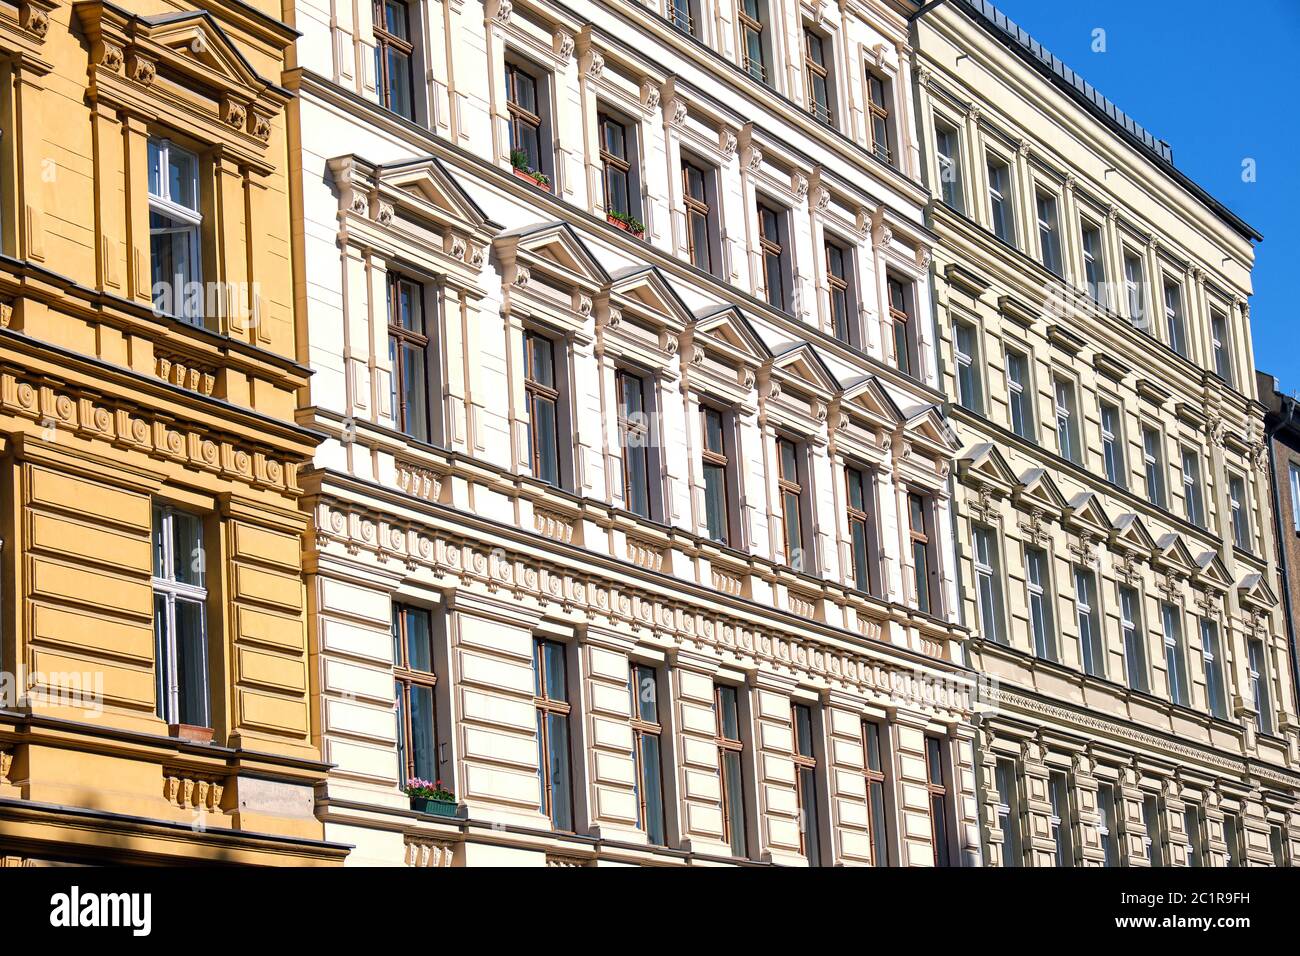 Façades de certains immeubles anciens rénovés vu à Berlin, Allemagne Banque D'Images